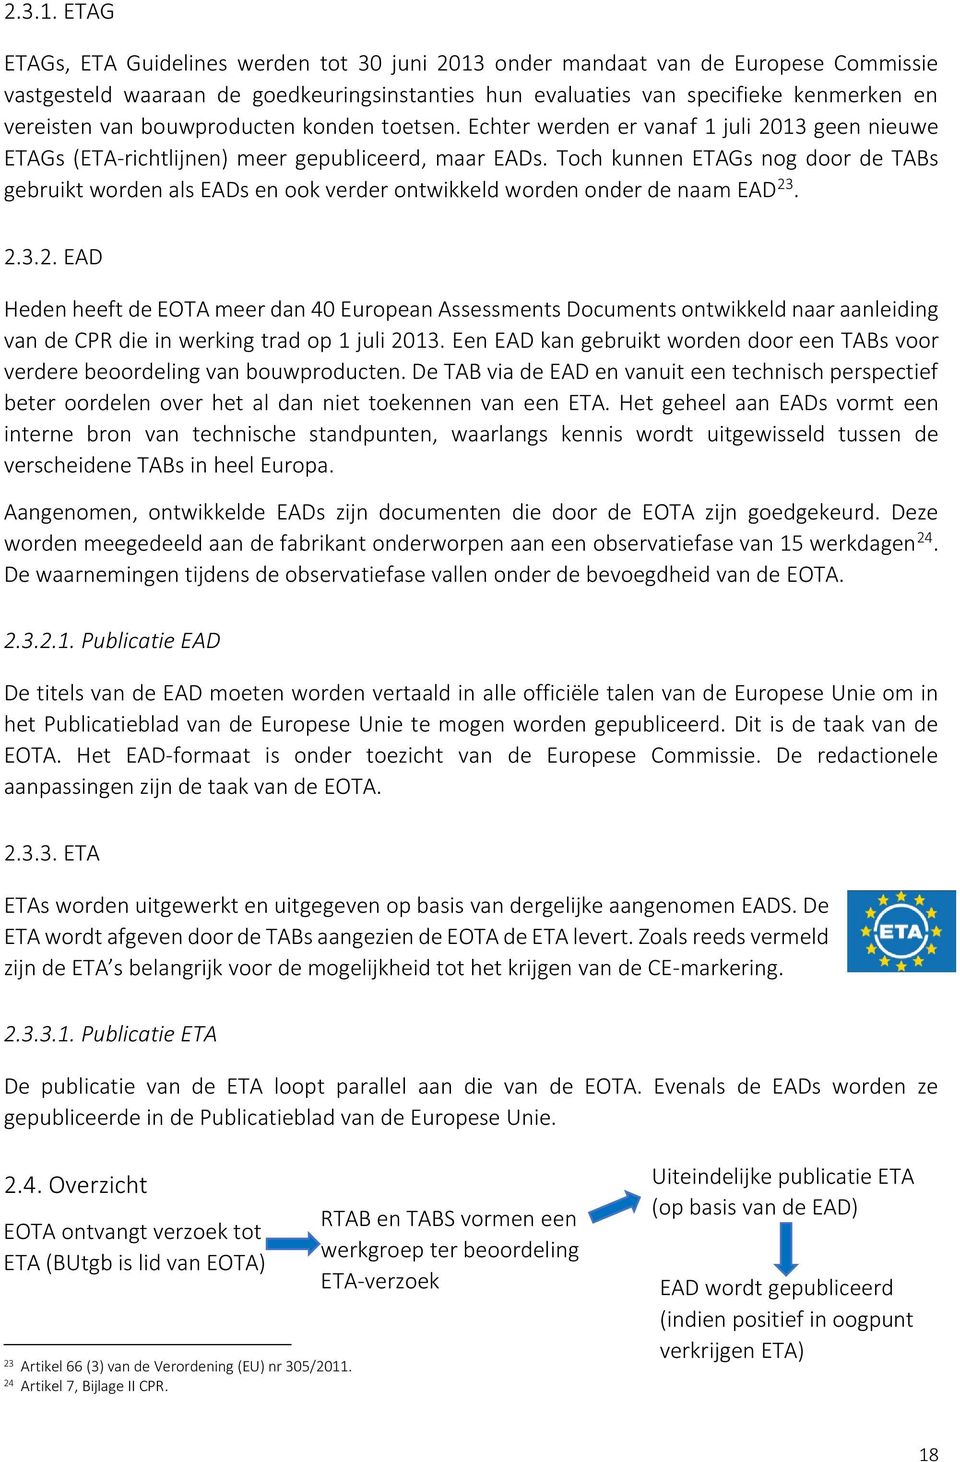 bouwproducten konden toetsen. Echter werden er vanaf 1 juli 2013 geen nieuwe ETAGs (ETA-richtlijnen) meer gepubliceerd, maar EADs.